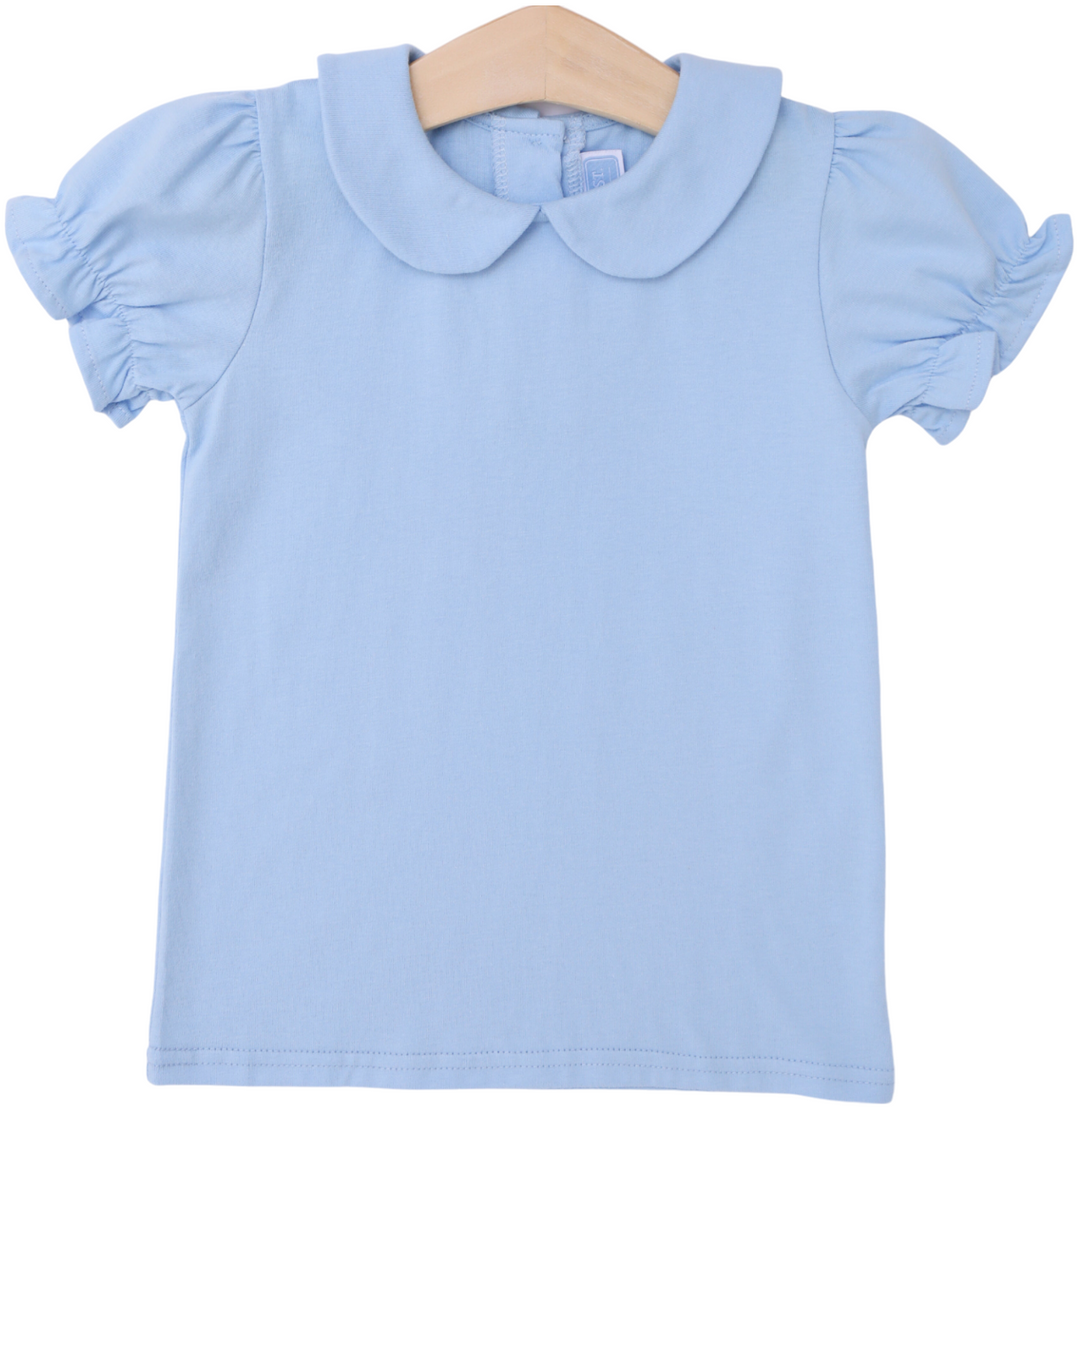 Peter Pan Collar Shirt- Light Blue, front